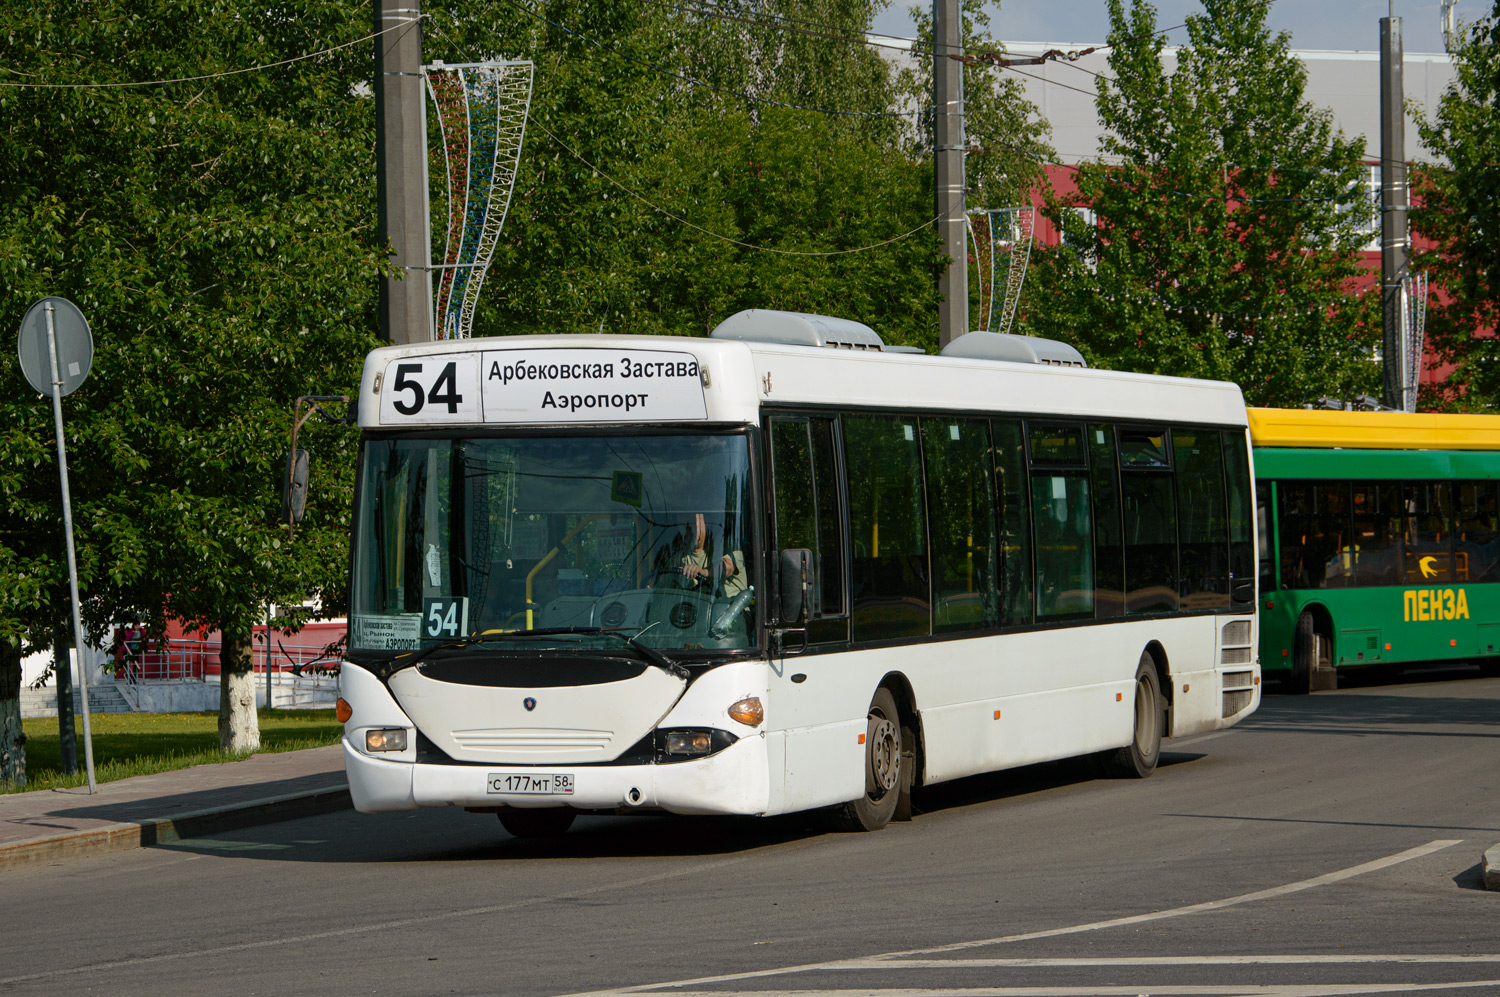 Пензенская область, Scania OmniLink I (Скания-Питер) № С 177 МТ 58